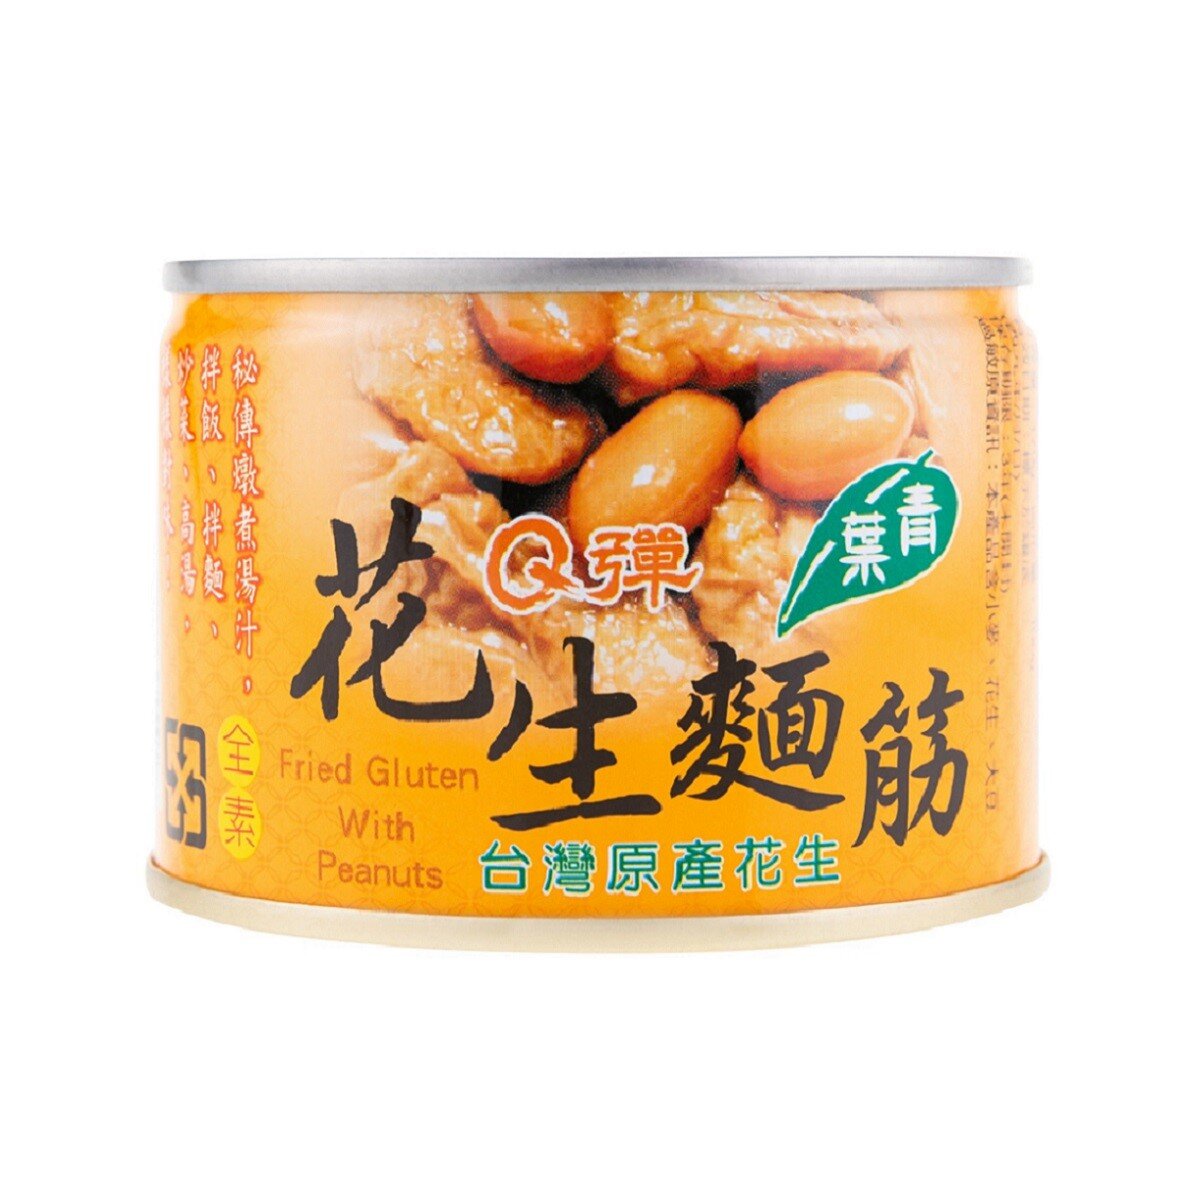 台灣 花生土豆麵筋罐頭 170g - 素食